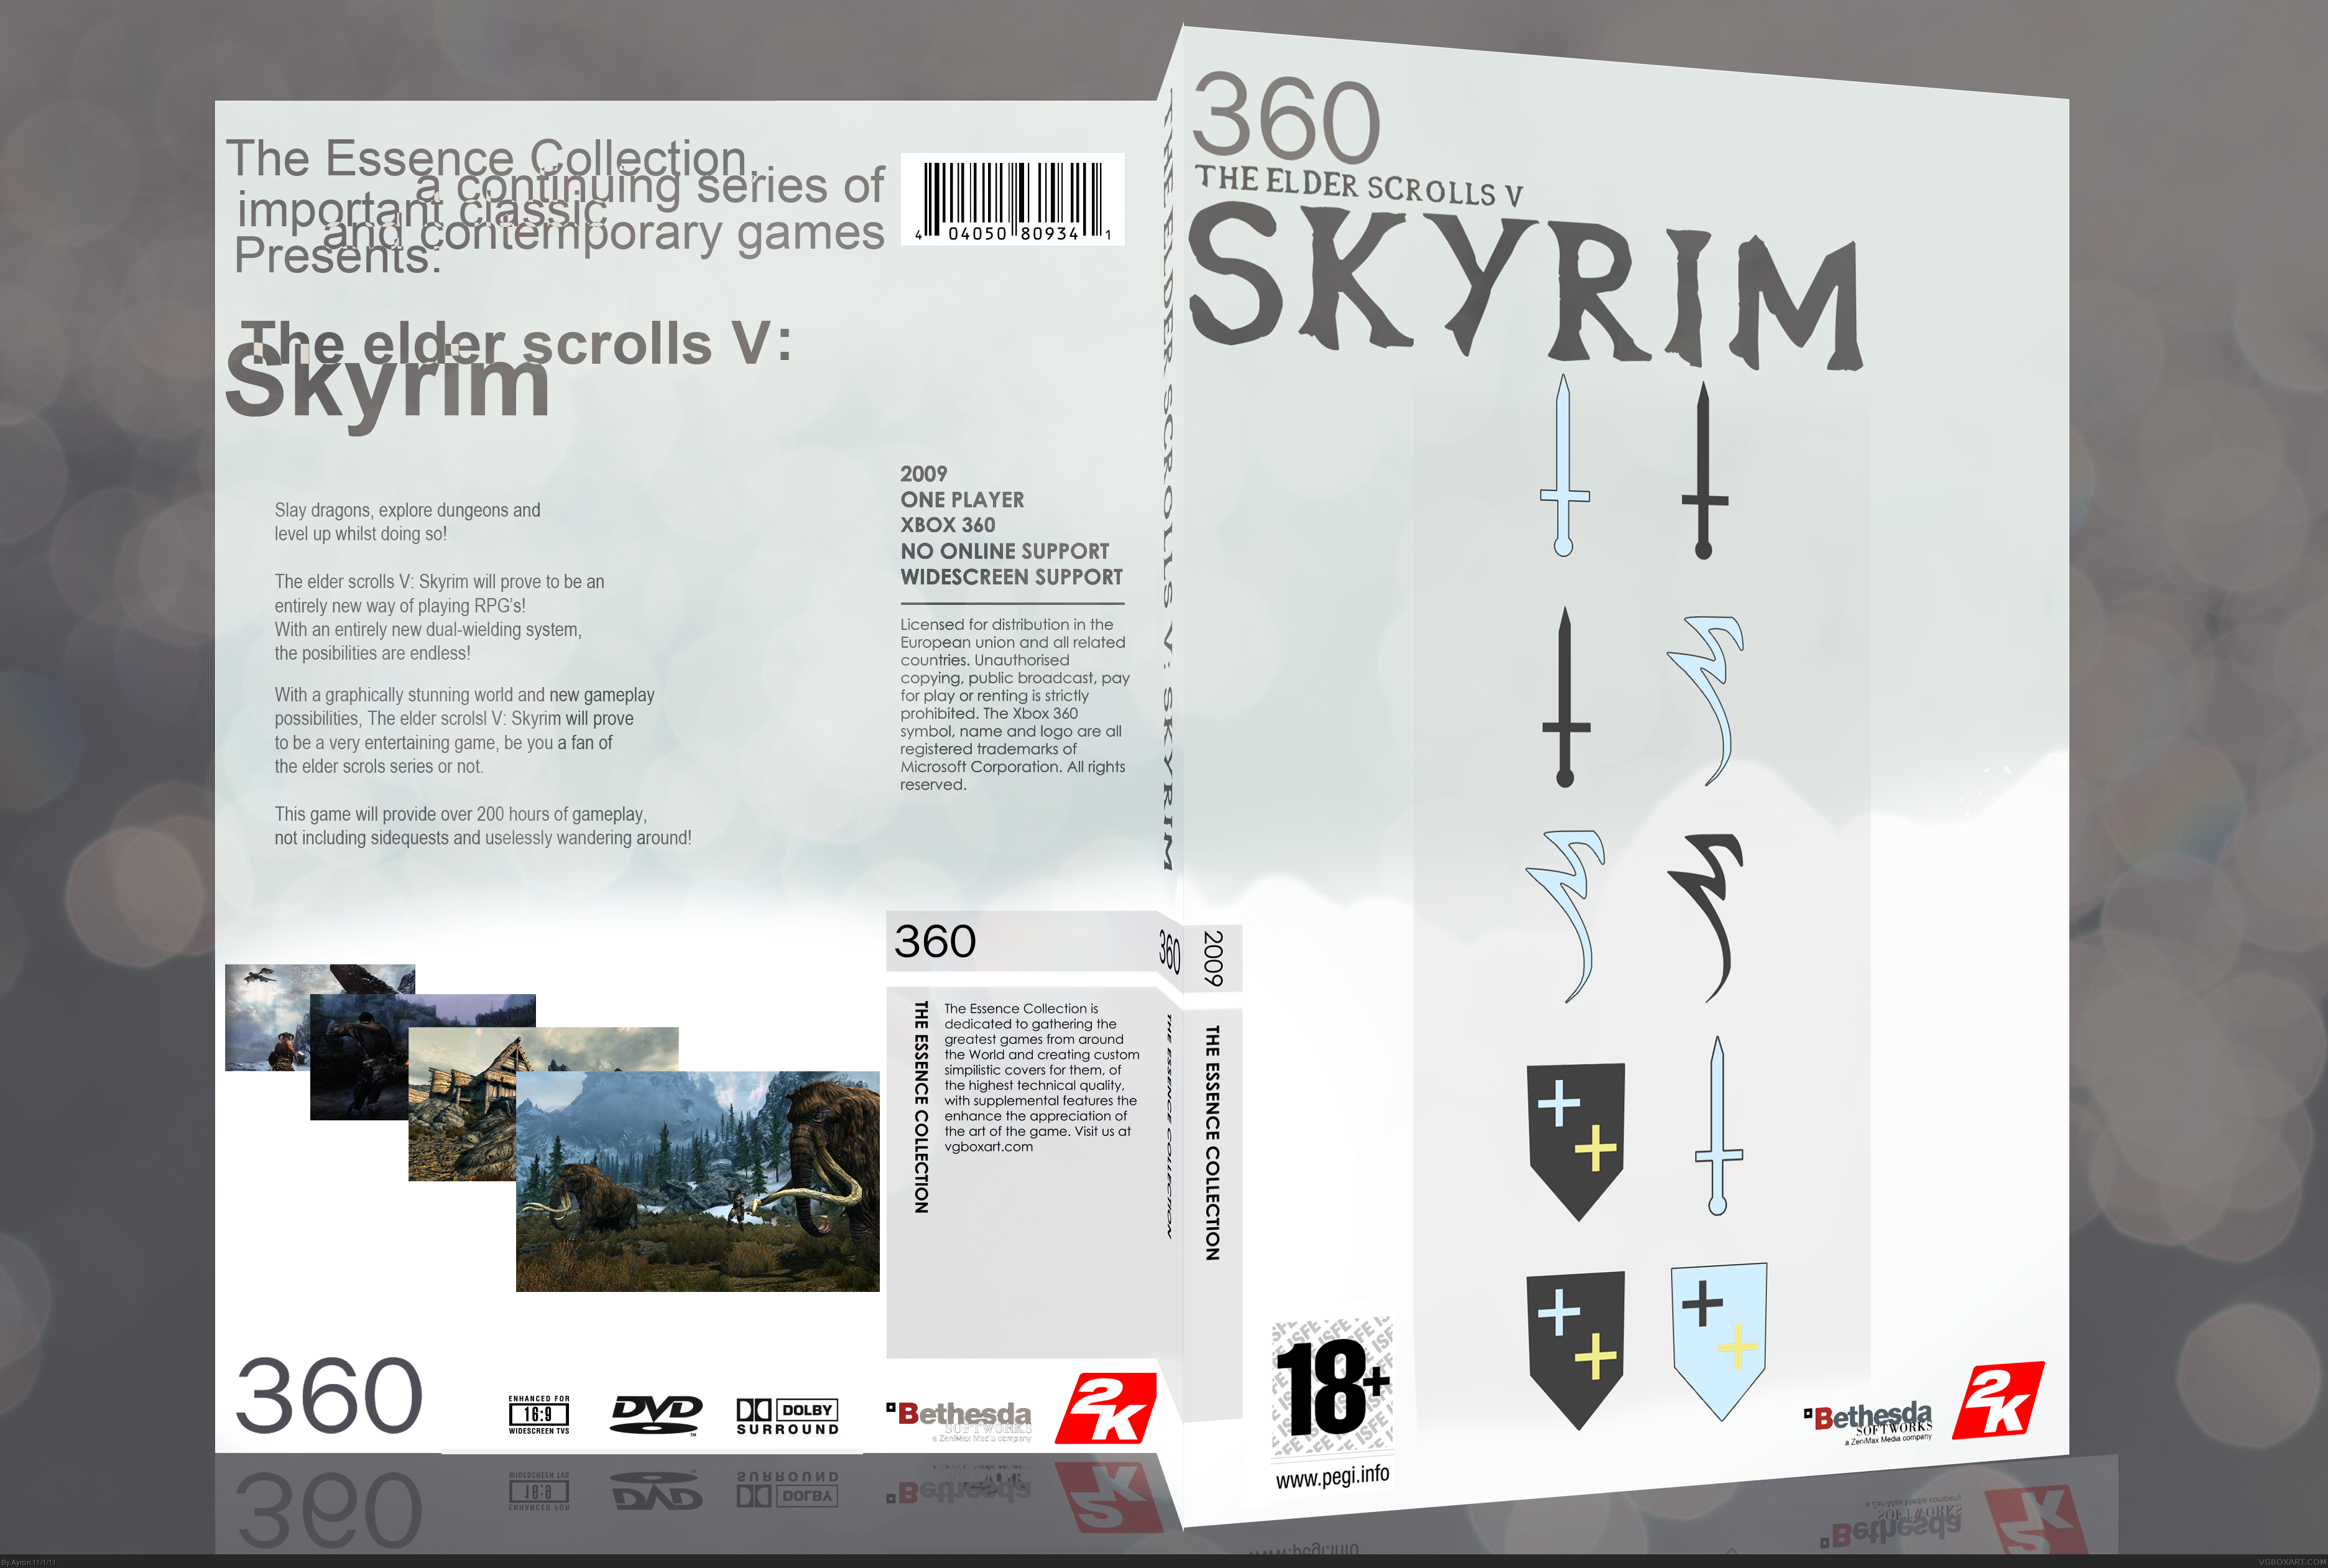 The Elder Scrolls V: Skyrim [Essence] box cover